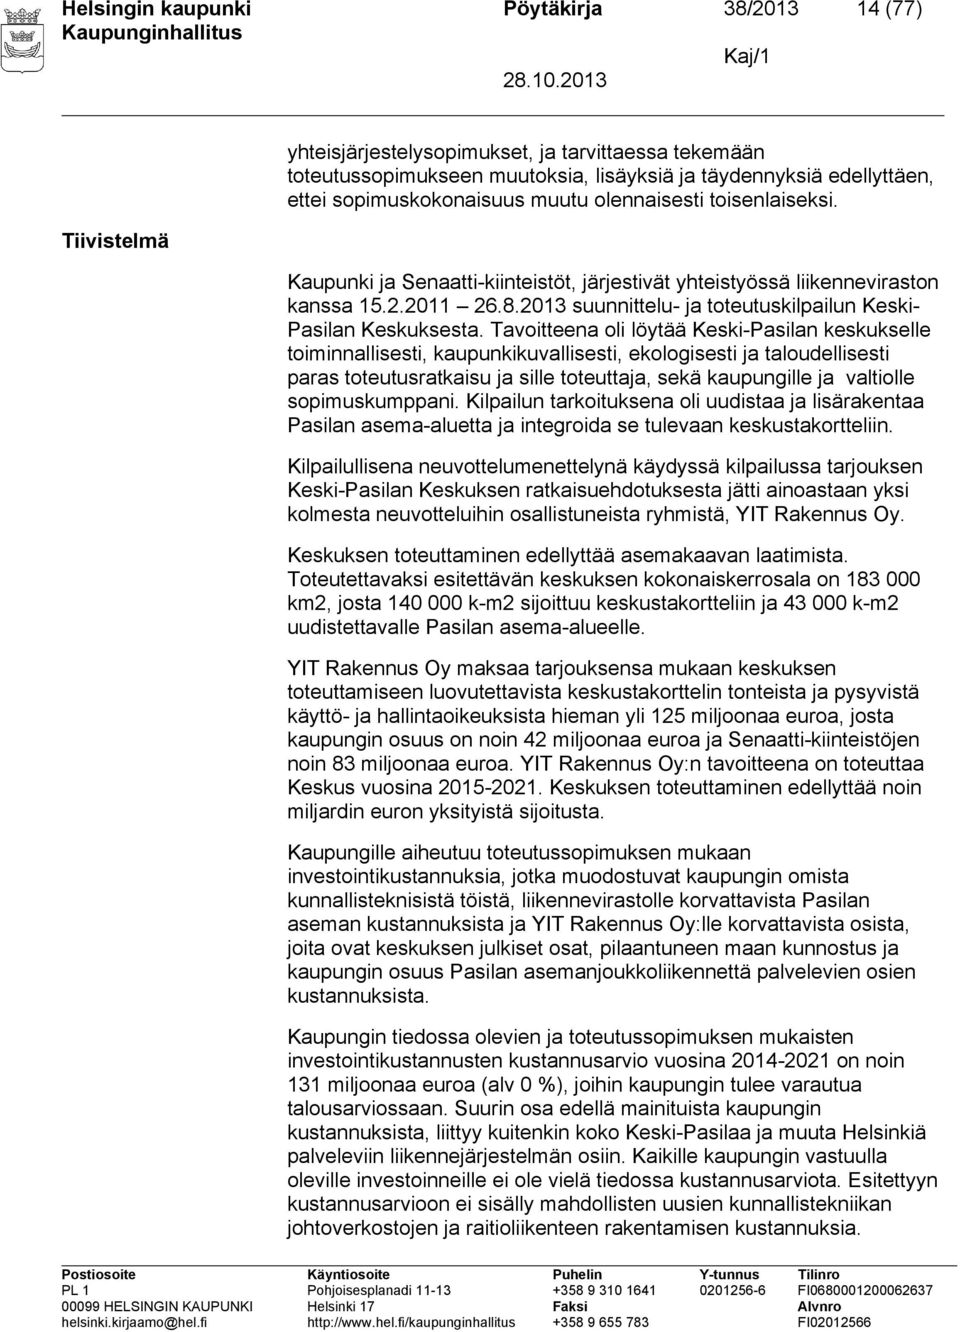 2013 suunnittelu- ja toteutuskilpailun Keski- Pasilan Keskuksesta.